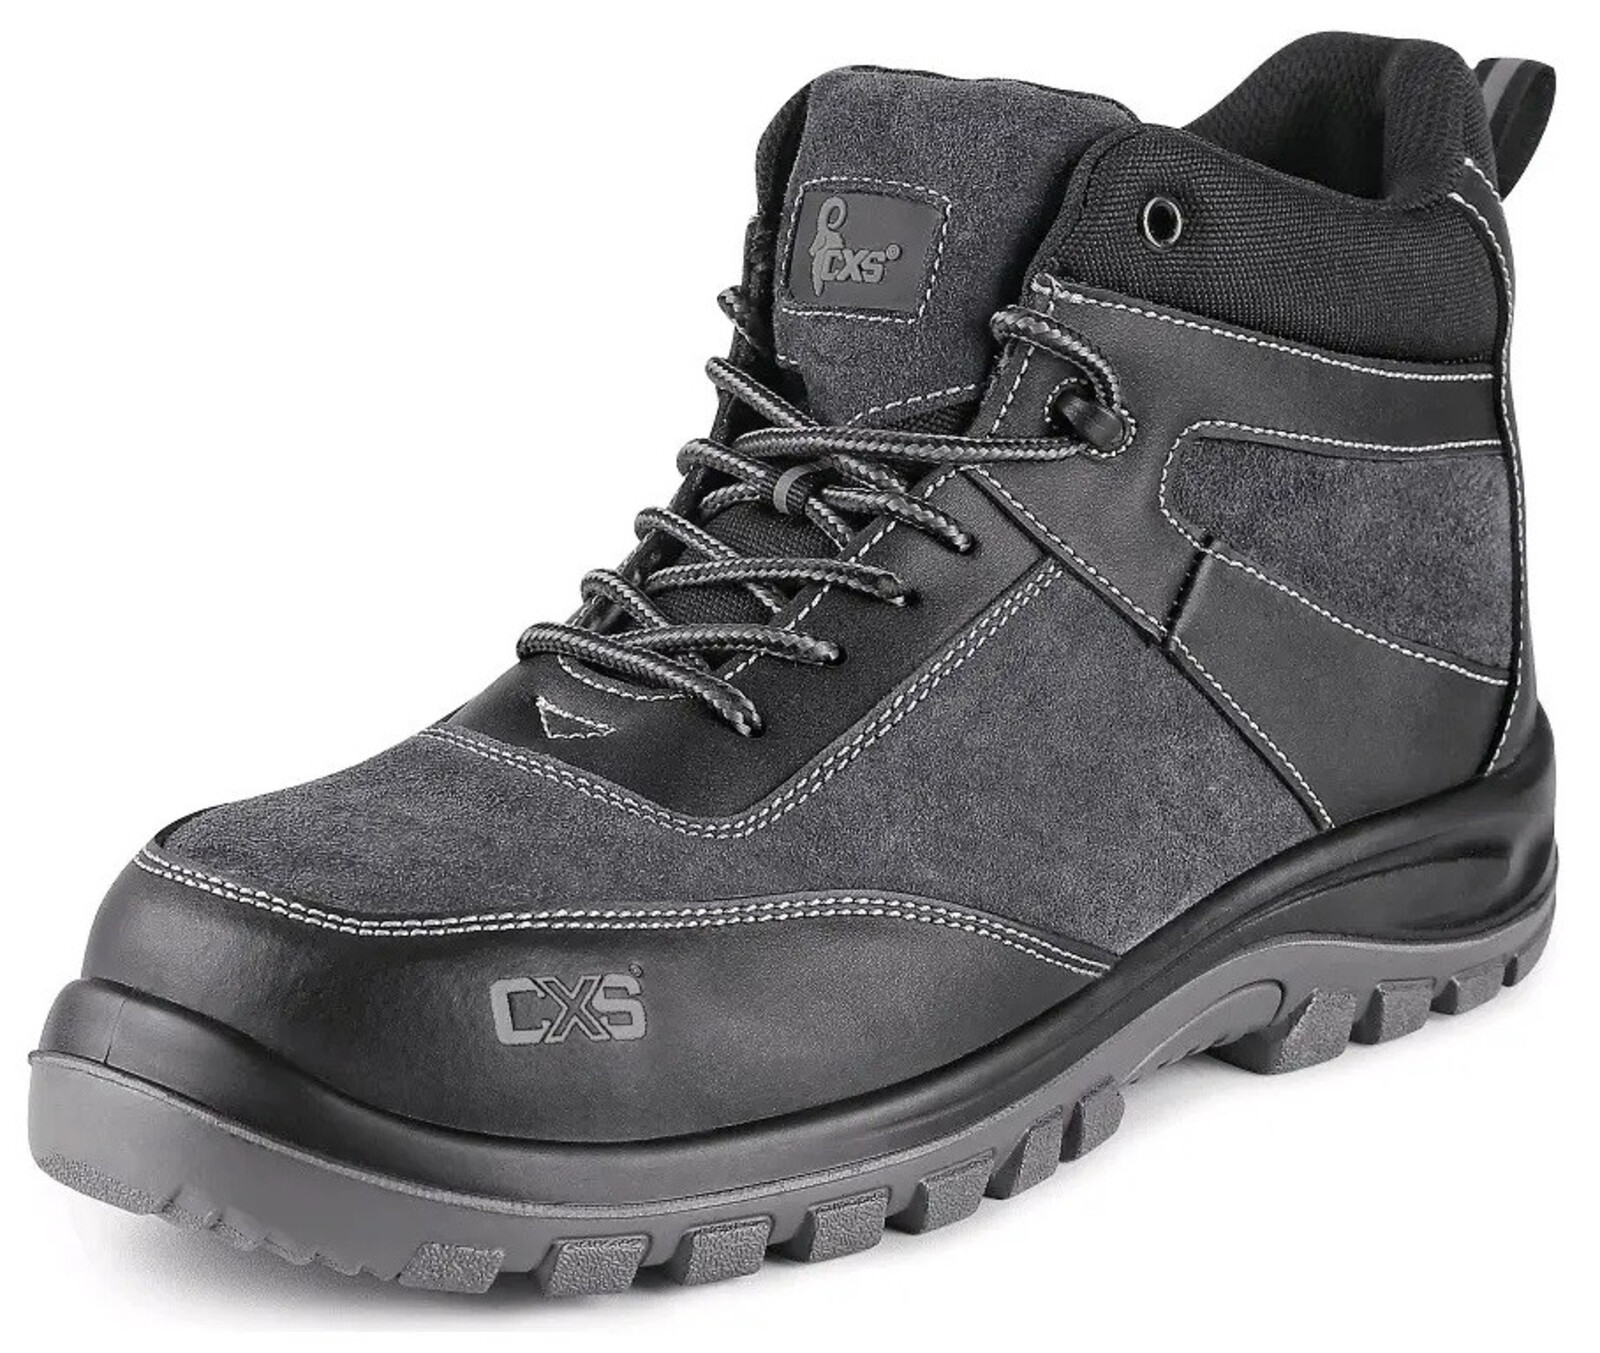 Bezpečnostná členková obuv CXS Profit Top S1P SRC - veľkosť: 38, farba: čierna/sivá